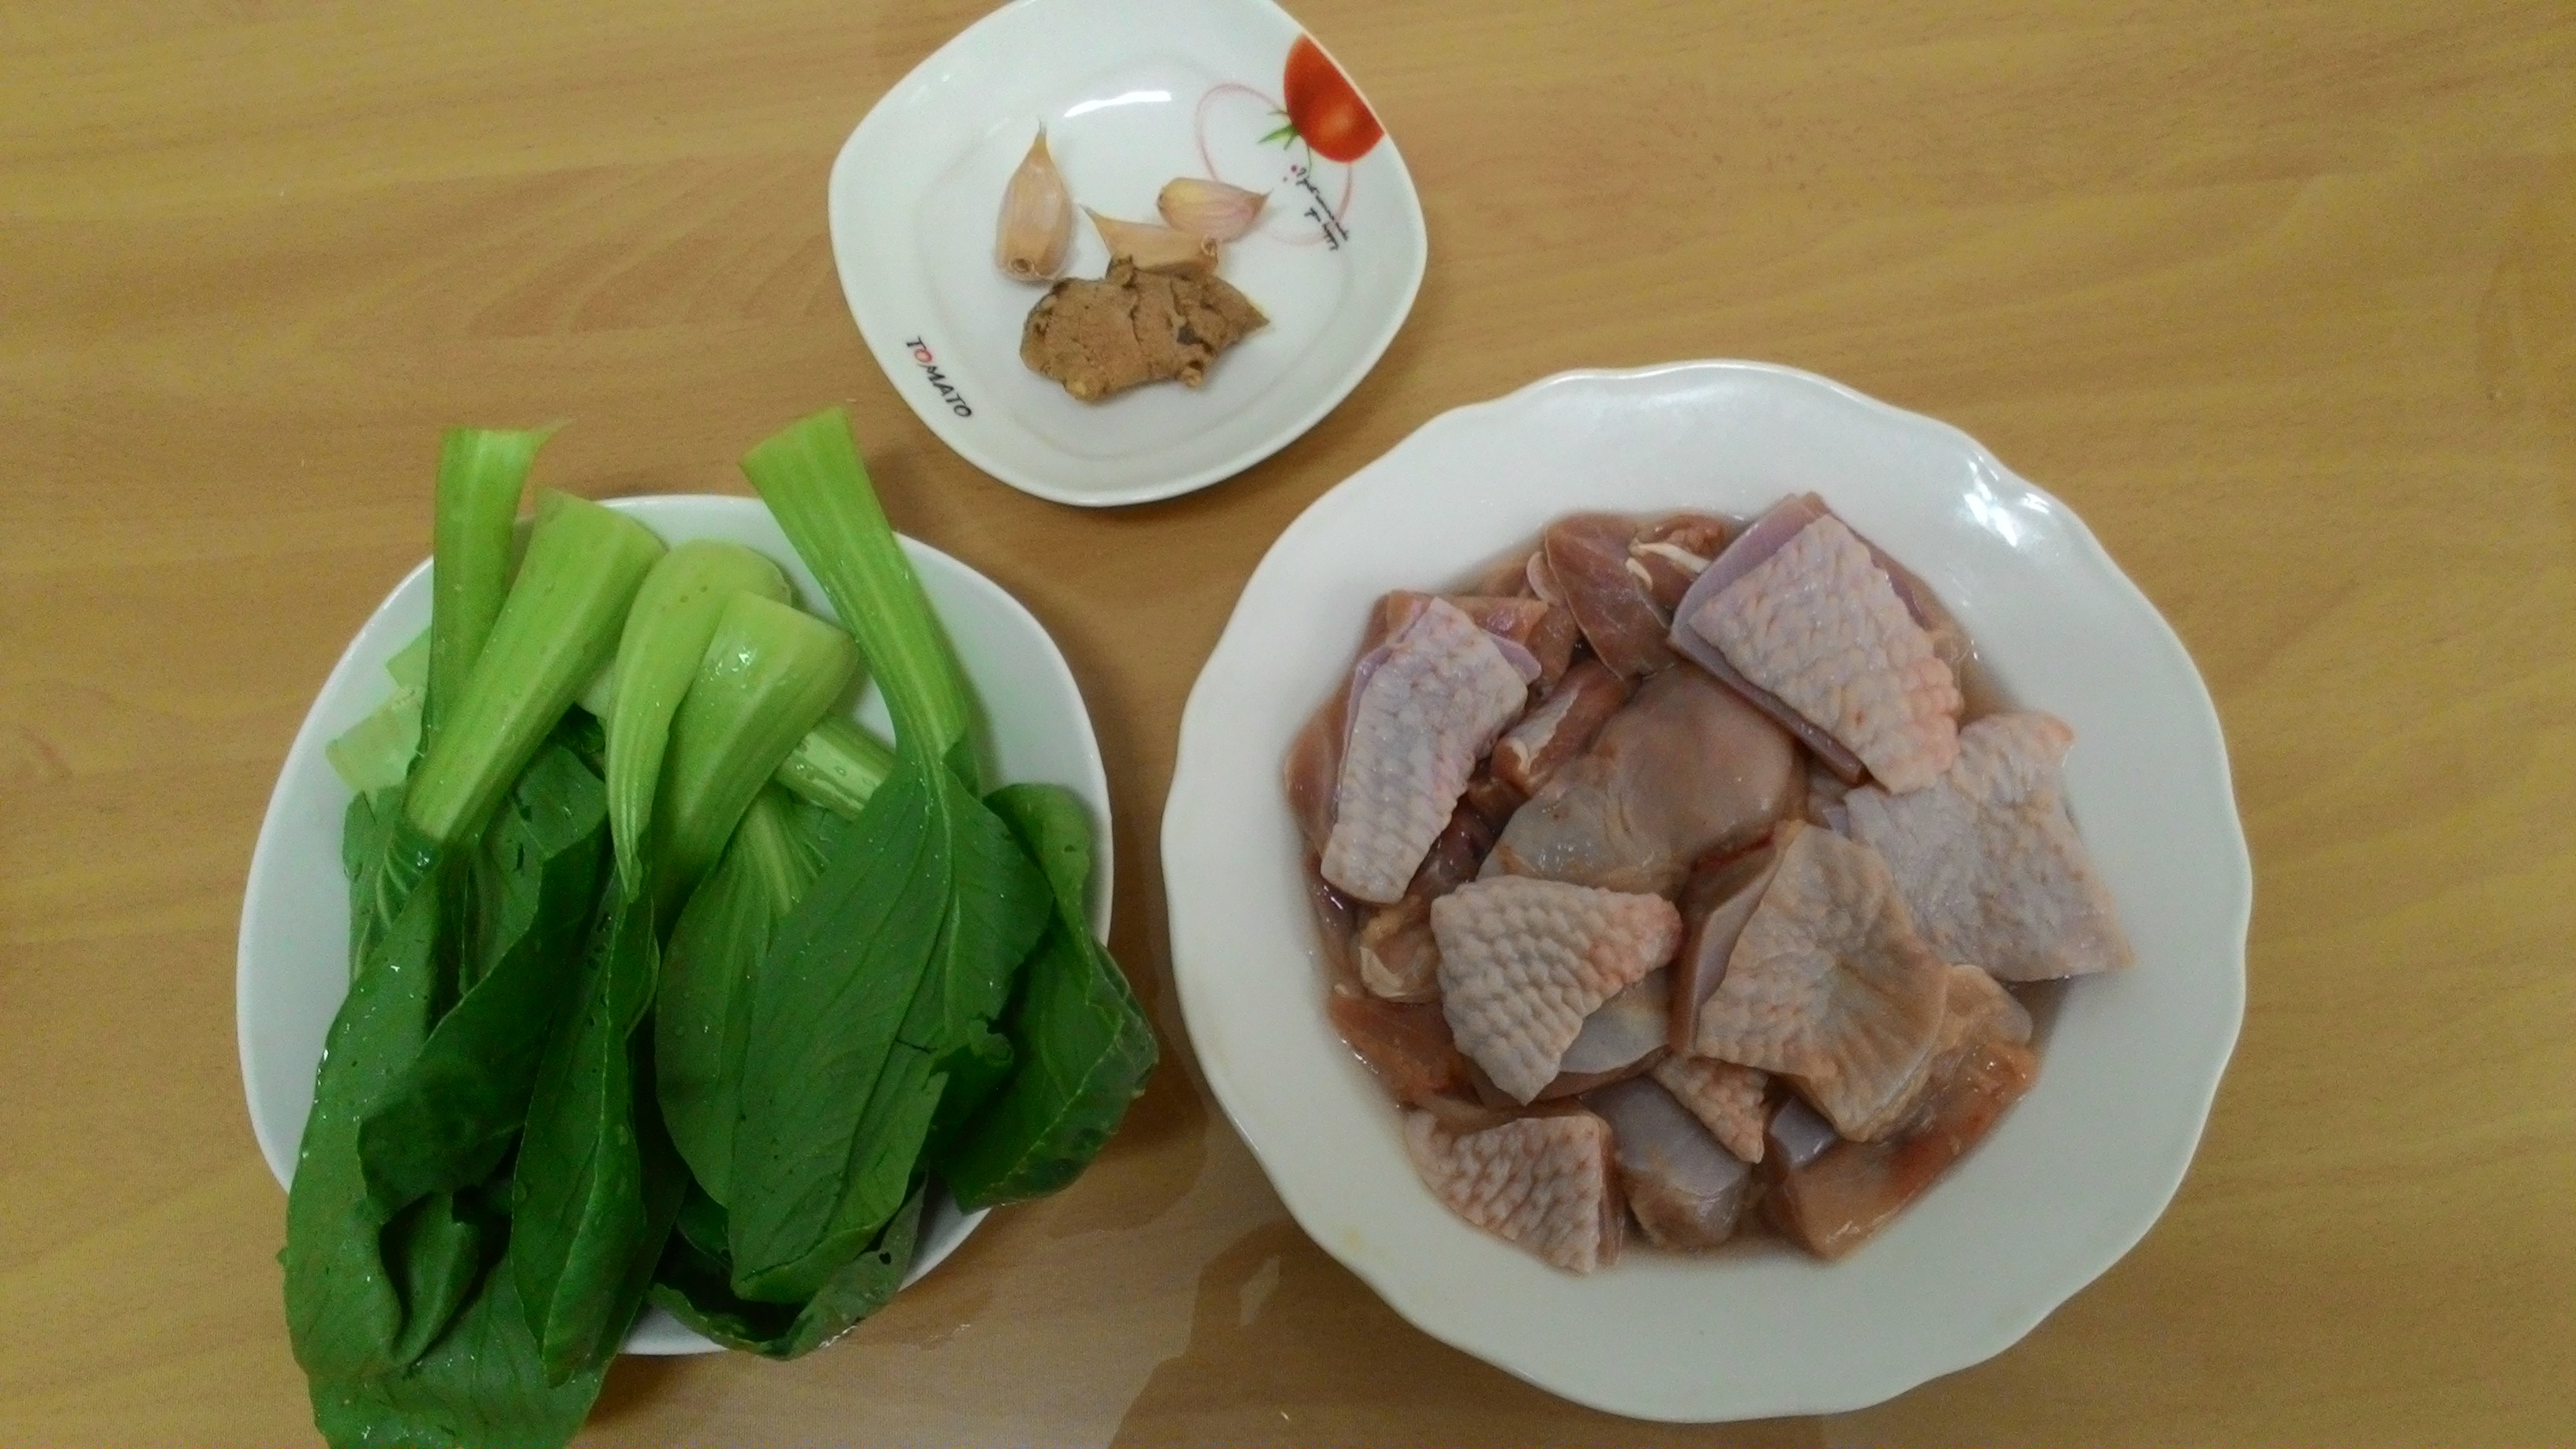 「薑蒜蒸雞」的食材有去骨雞腿肉、青江菜、薑和蒜。